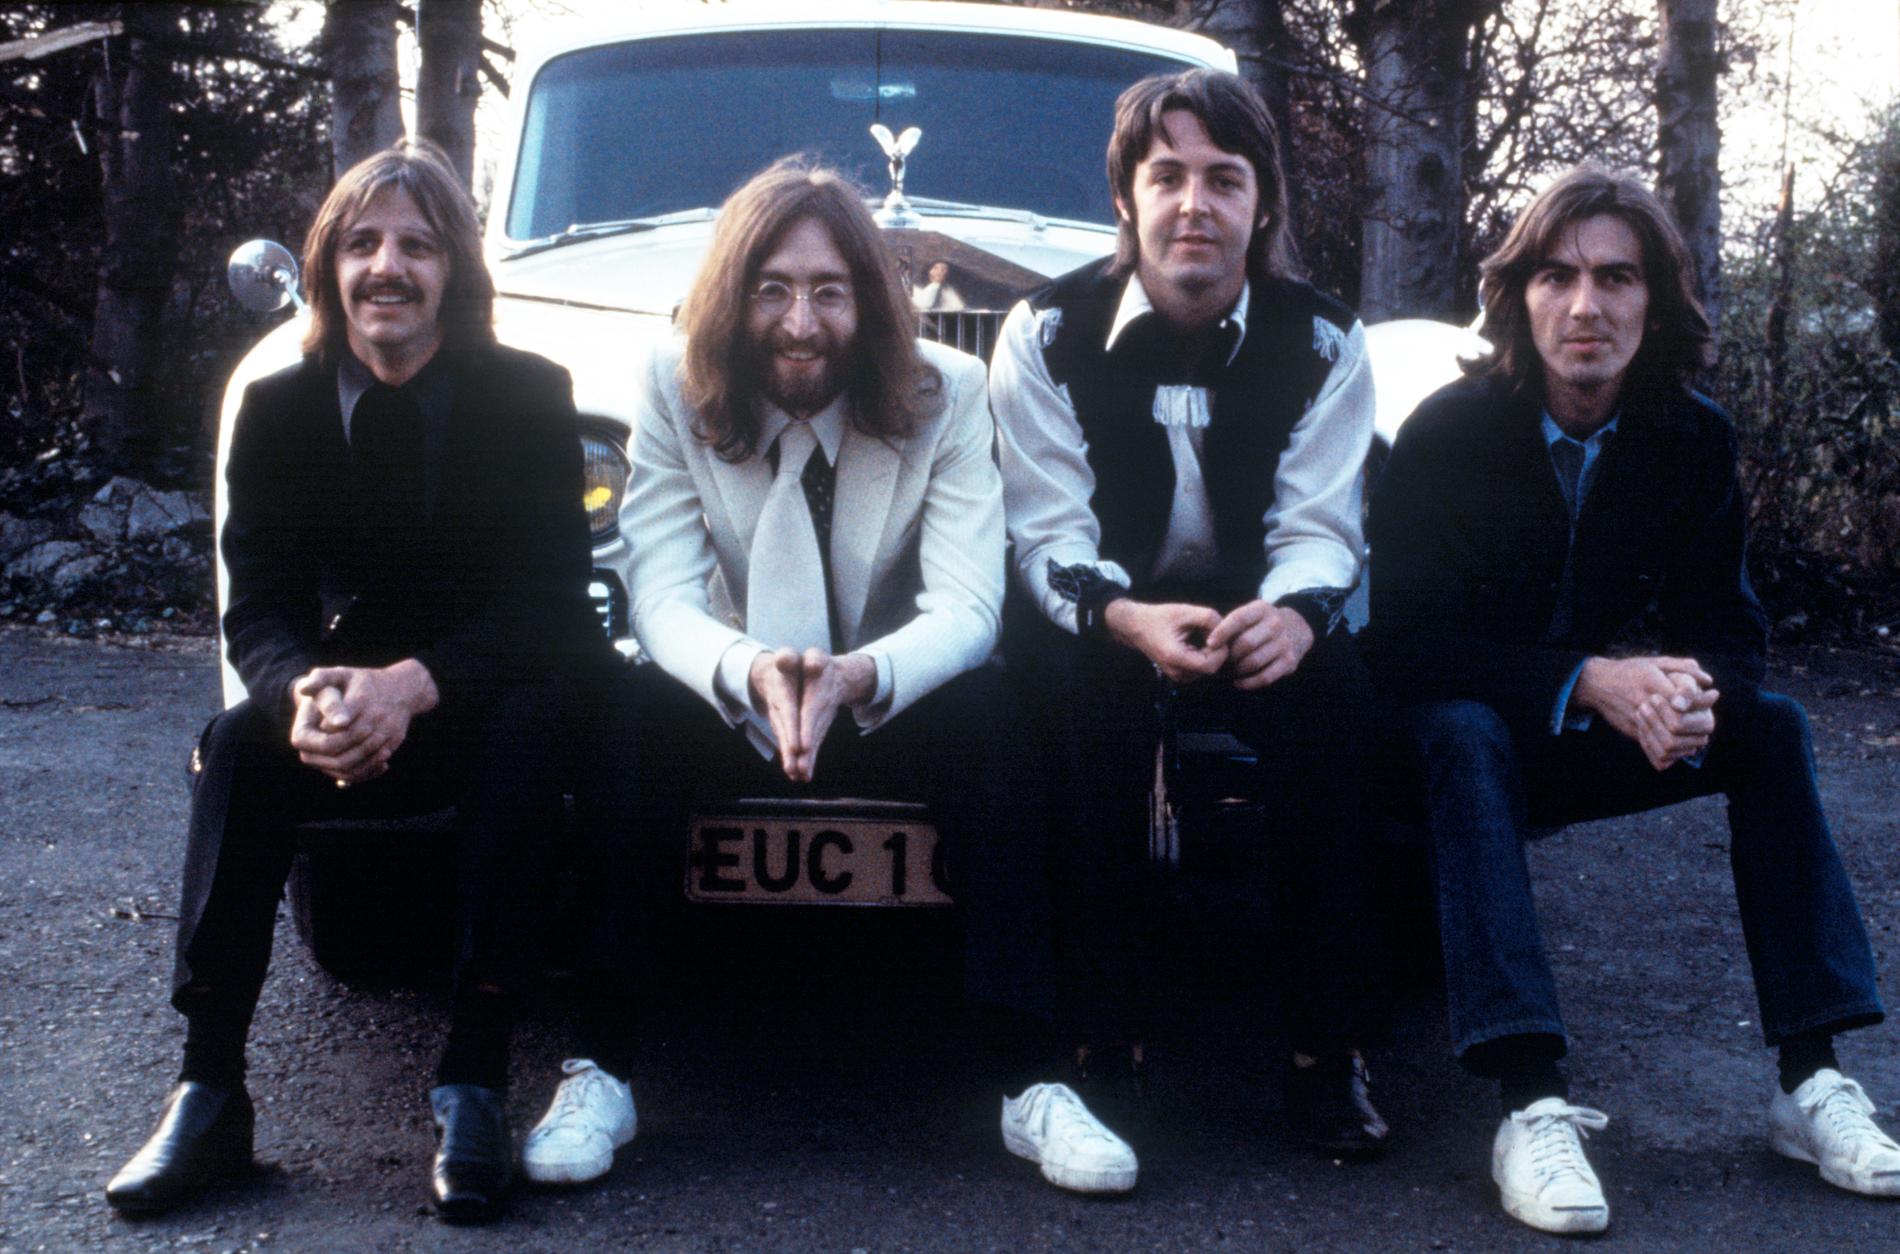 Med hjälp av modern teknik kan The Beatles i dag ge ut sin allra sista singel ”Now and then”, 53 år efter att bandet splittrades.